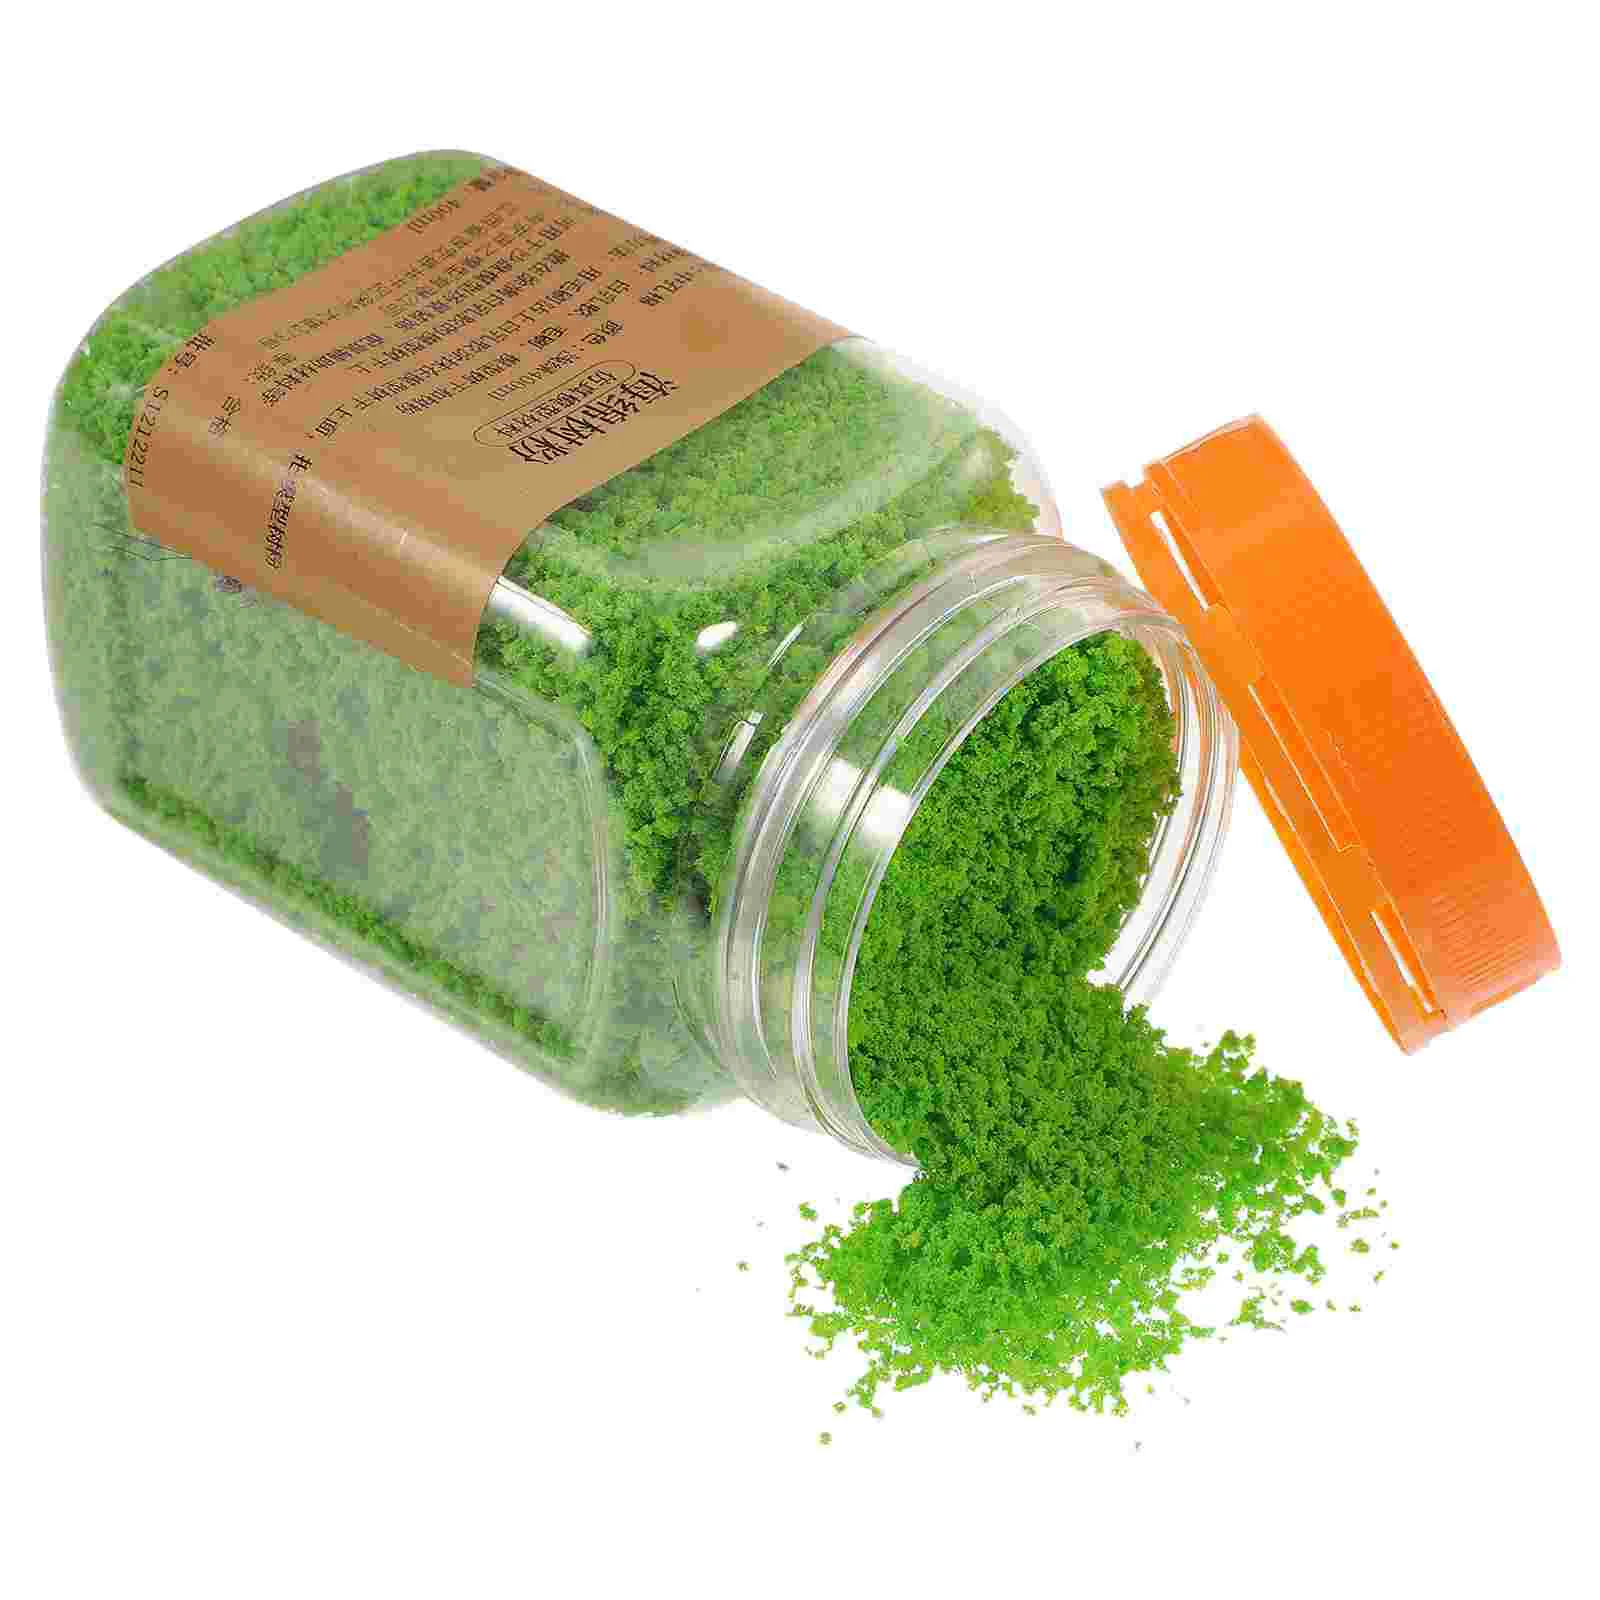 

1 Bottle of Landscape Basing Material Grass Dressing Scatter Sponge Moss Material 400ml